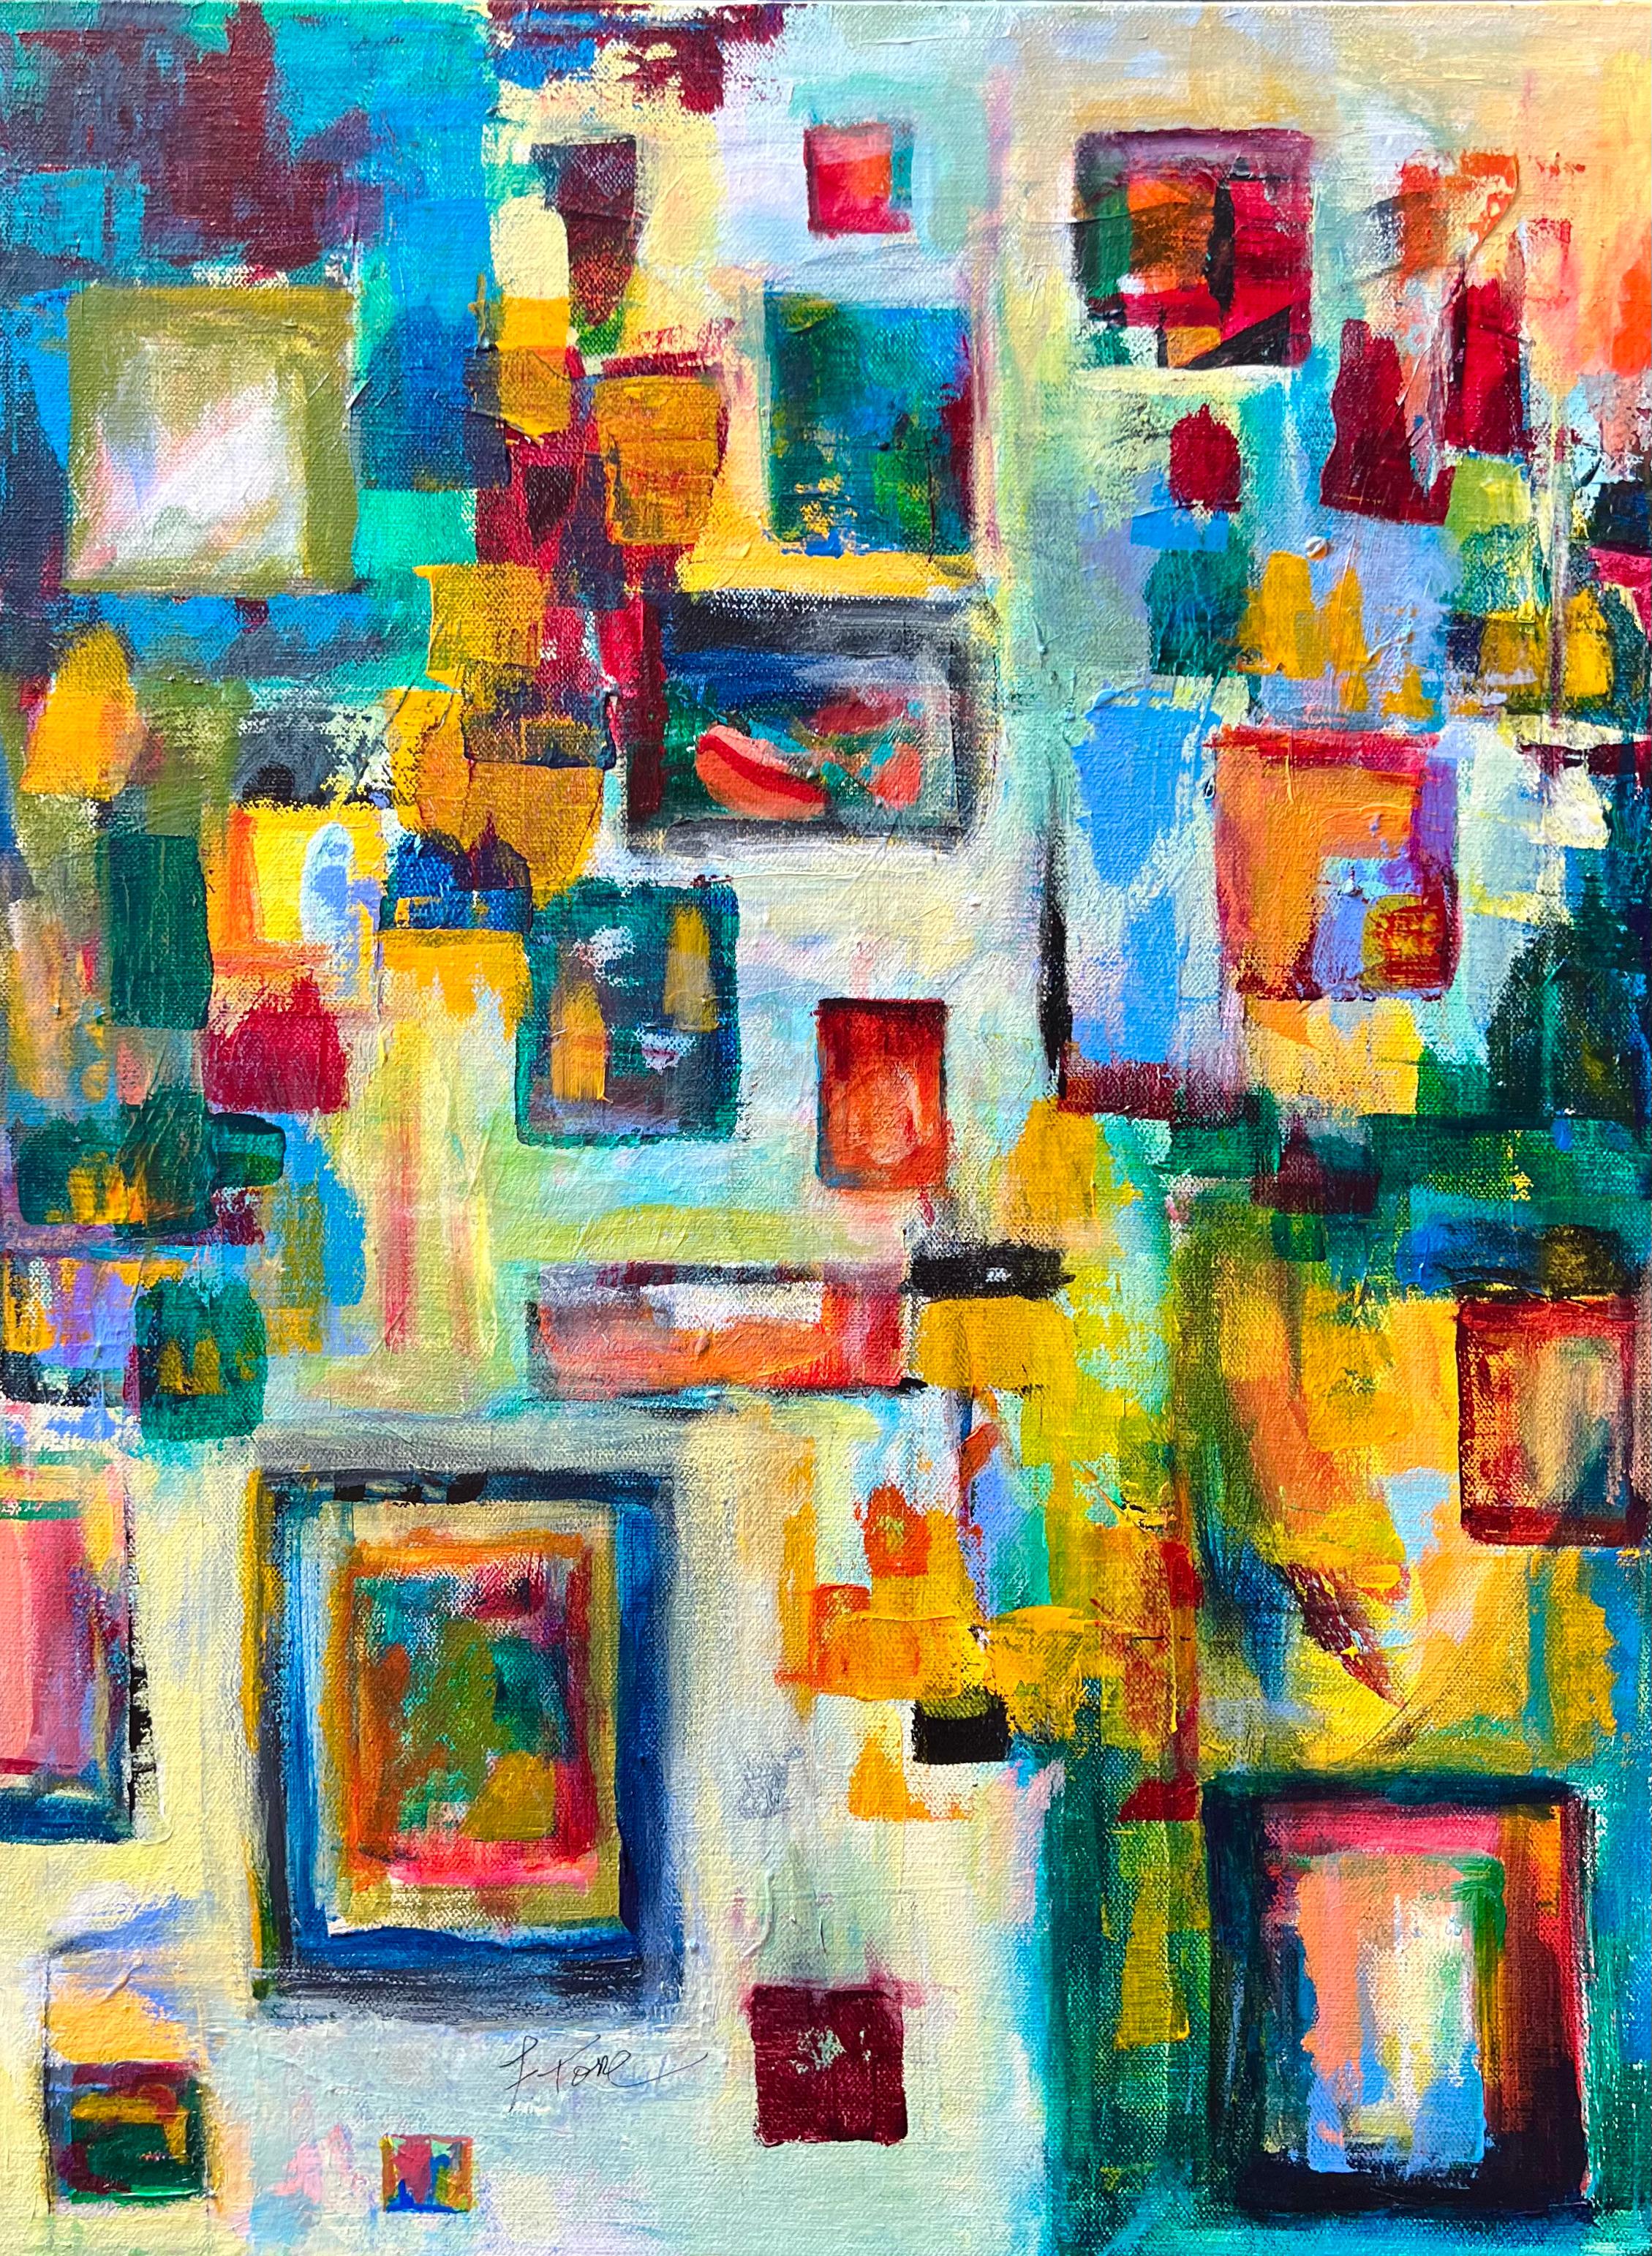 Abstract Painting Fredda Tone - Apprendre à flotter, peinture abstraite aux couleurs vives, bleus jaunes rouges